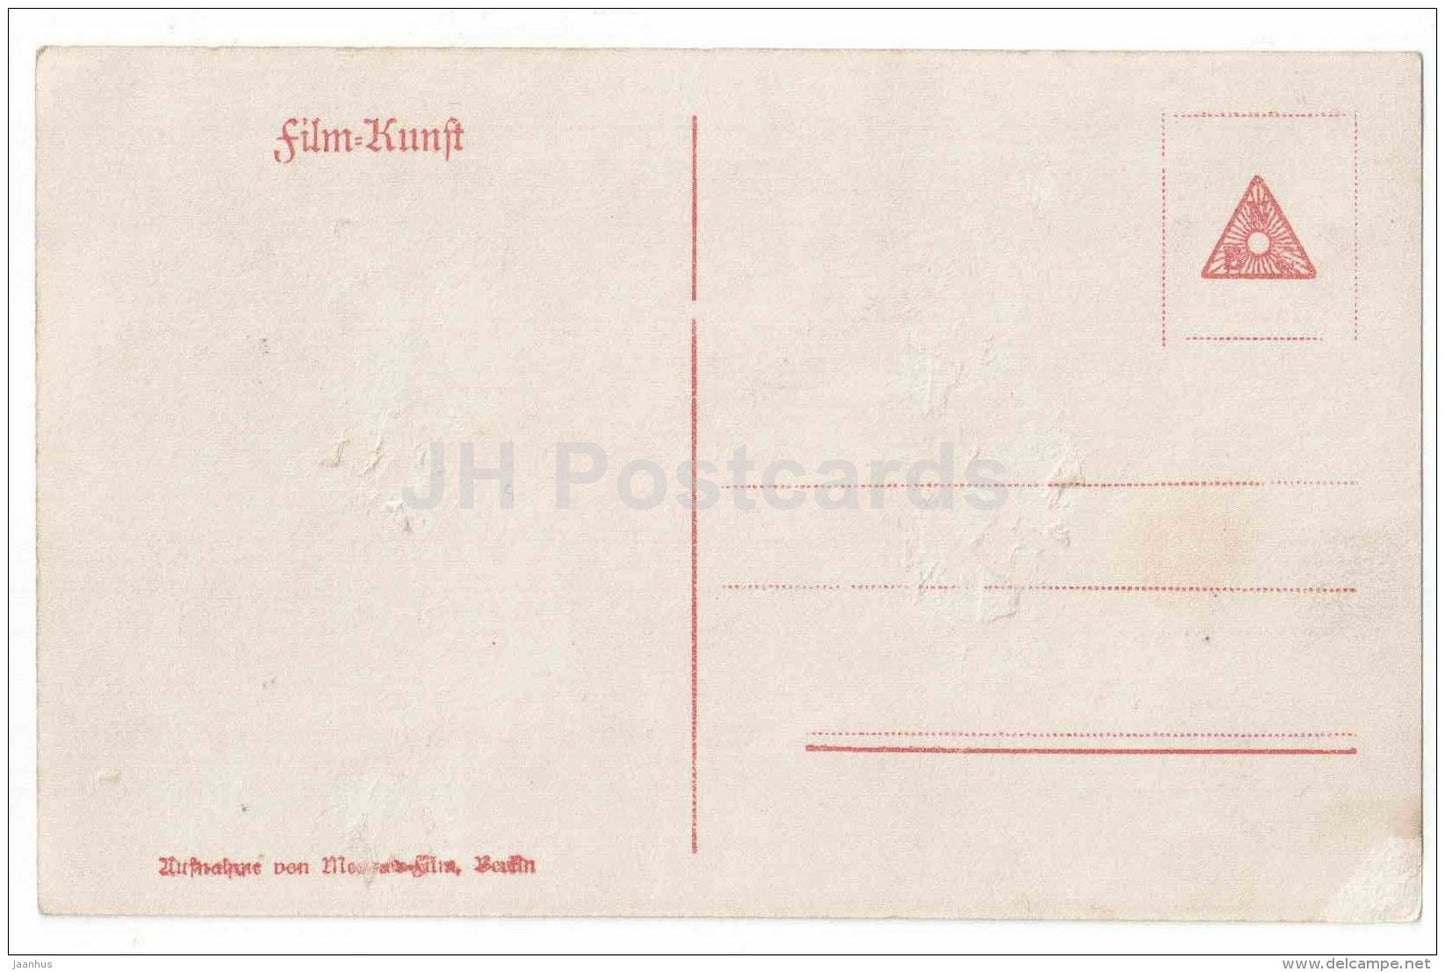 Die beiden Gatten der Frau Ruth - Henny Porten - movie - film - 615/5 - old postcard - Germany - unused - JH Postcards